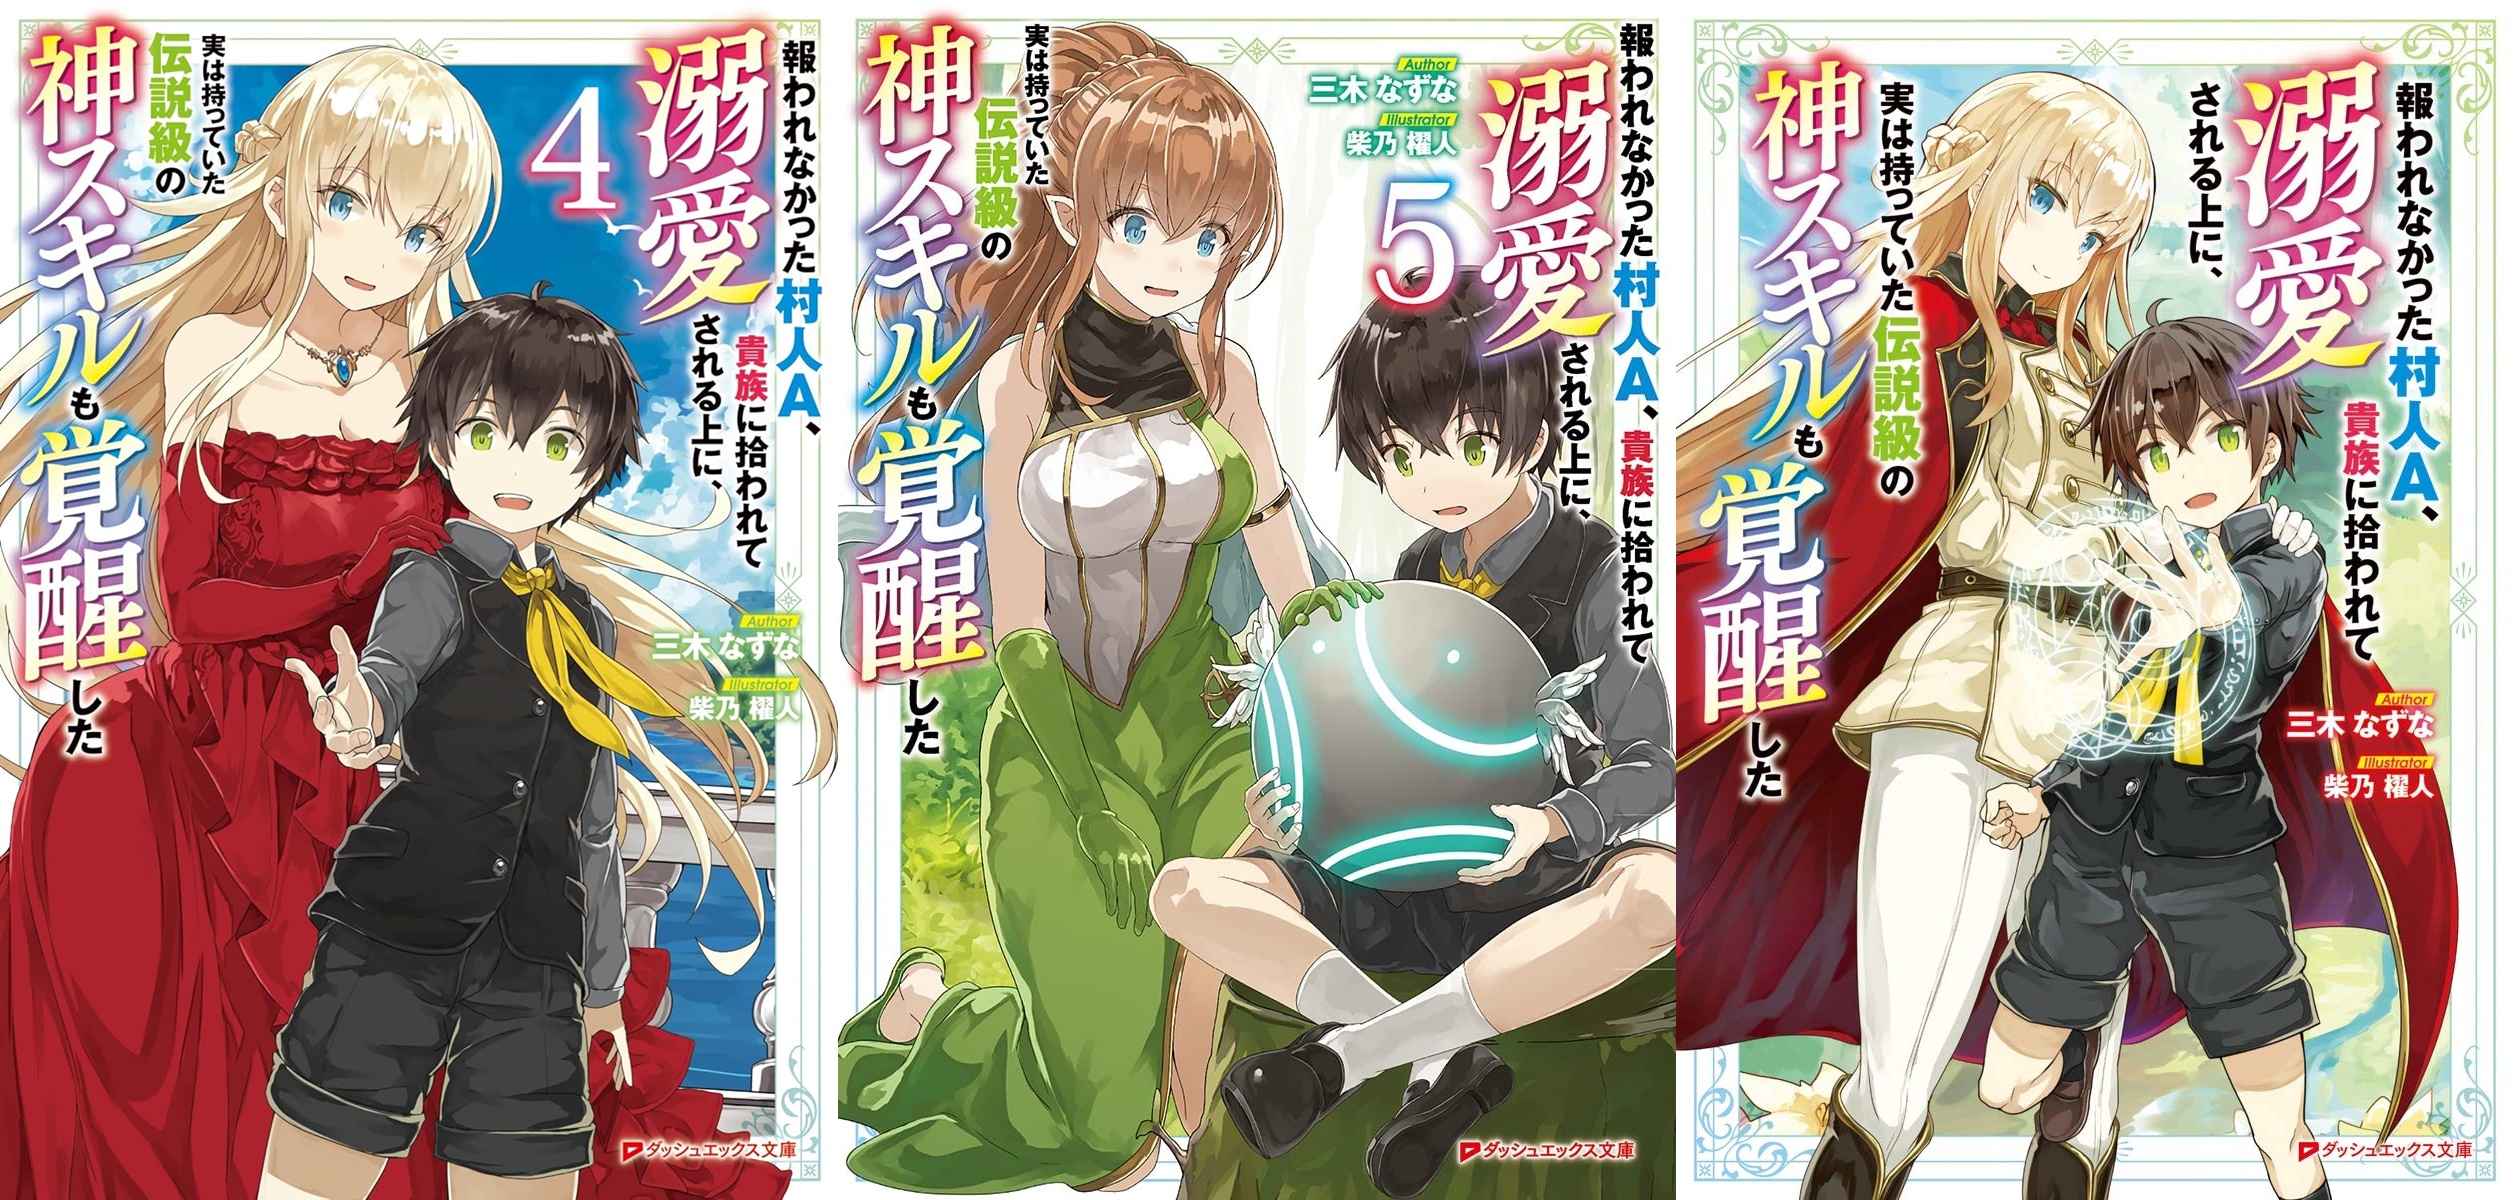 Jitsu wa Ore - Novel do herói abandonado vai ganhar anime em 2023 - AnimeNew